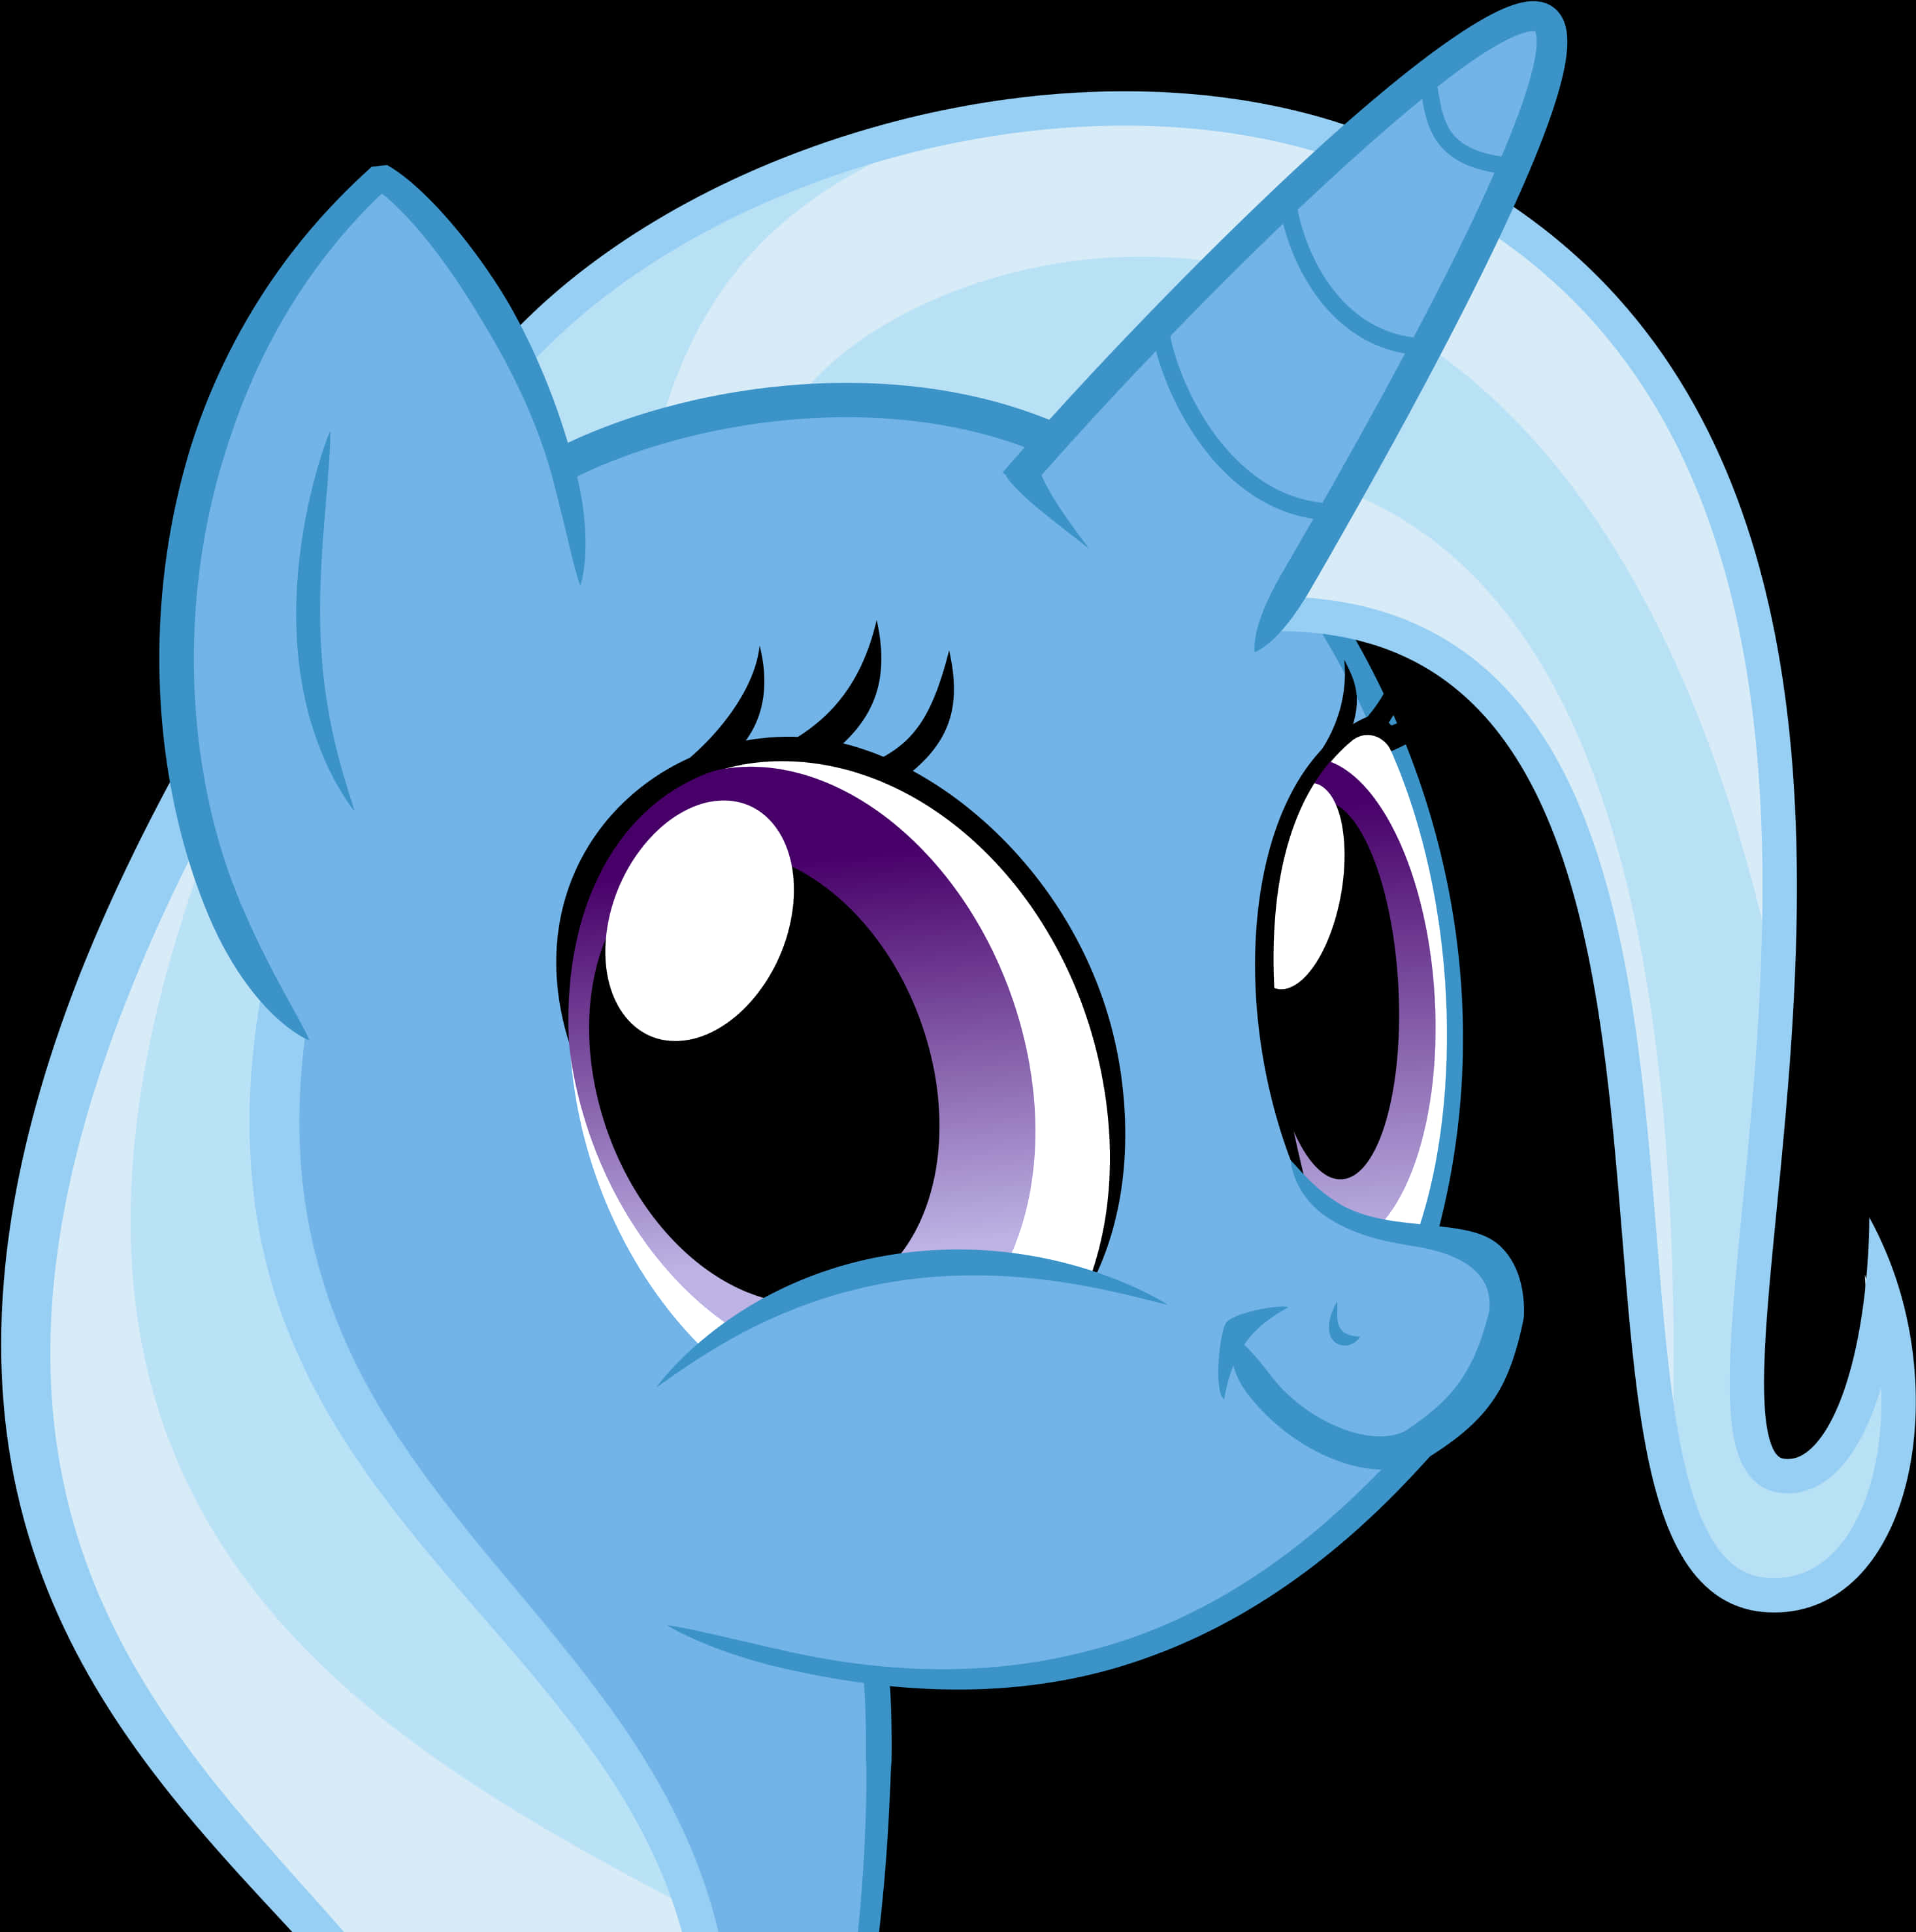 Blue Unicorn Pony Smiling PNG image